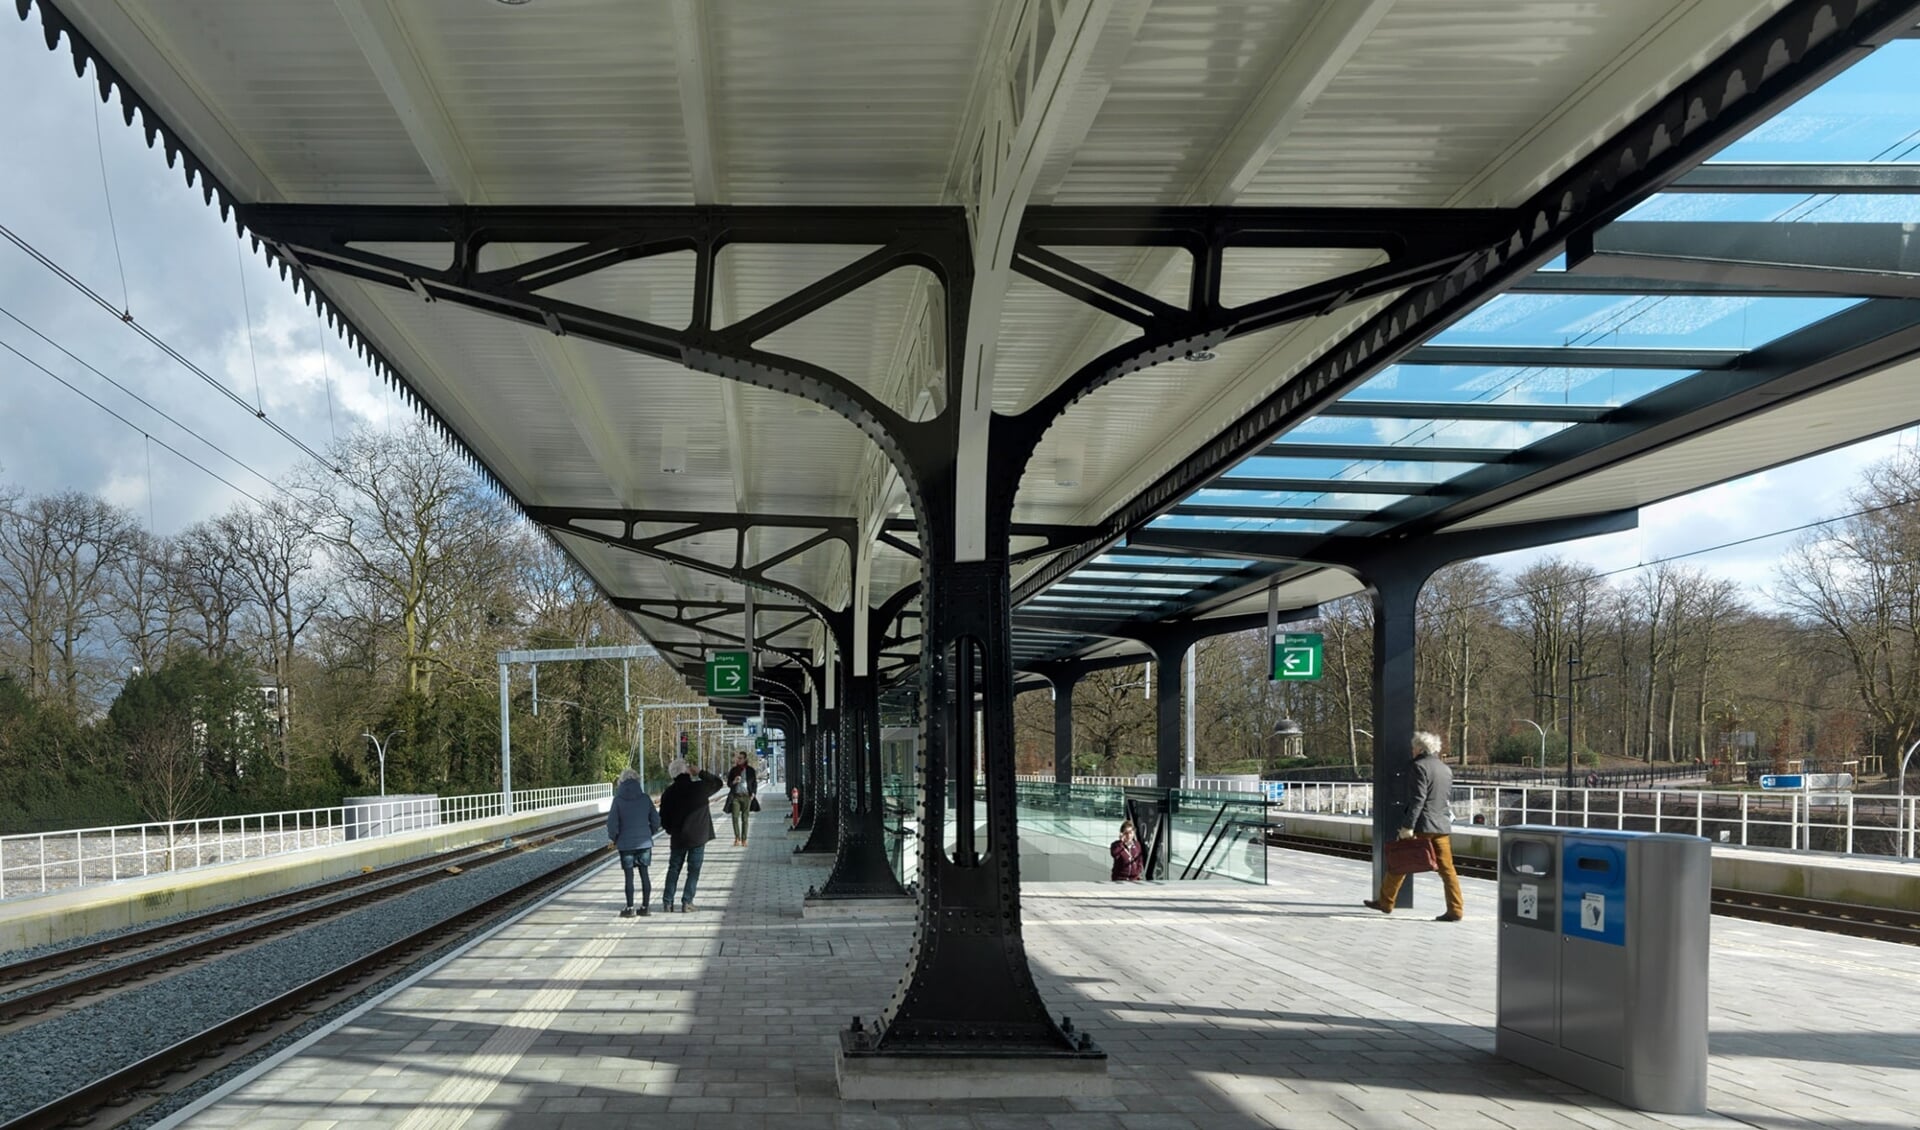 Station Driebergen-Zeist is met medewerking van Smederij Oldenhave vernieuwd. Daarbij is de monumentale perronkap uit 1900 behouden. Foto: Michel Kievits